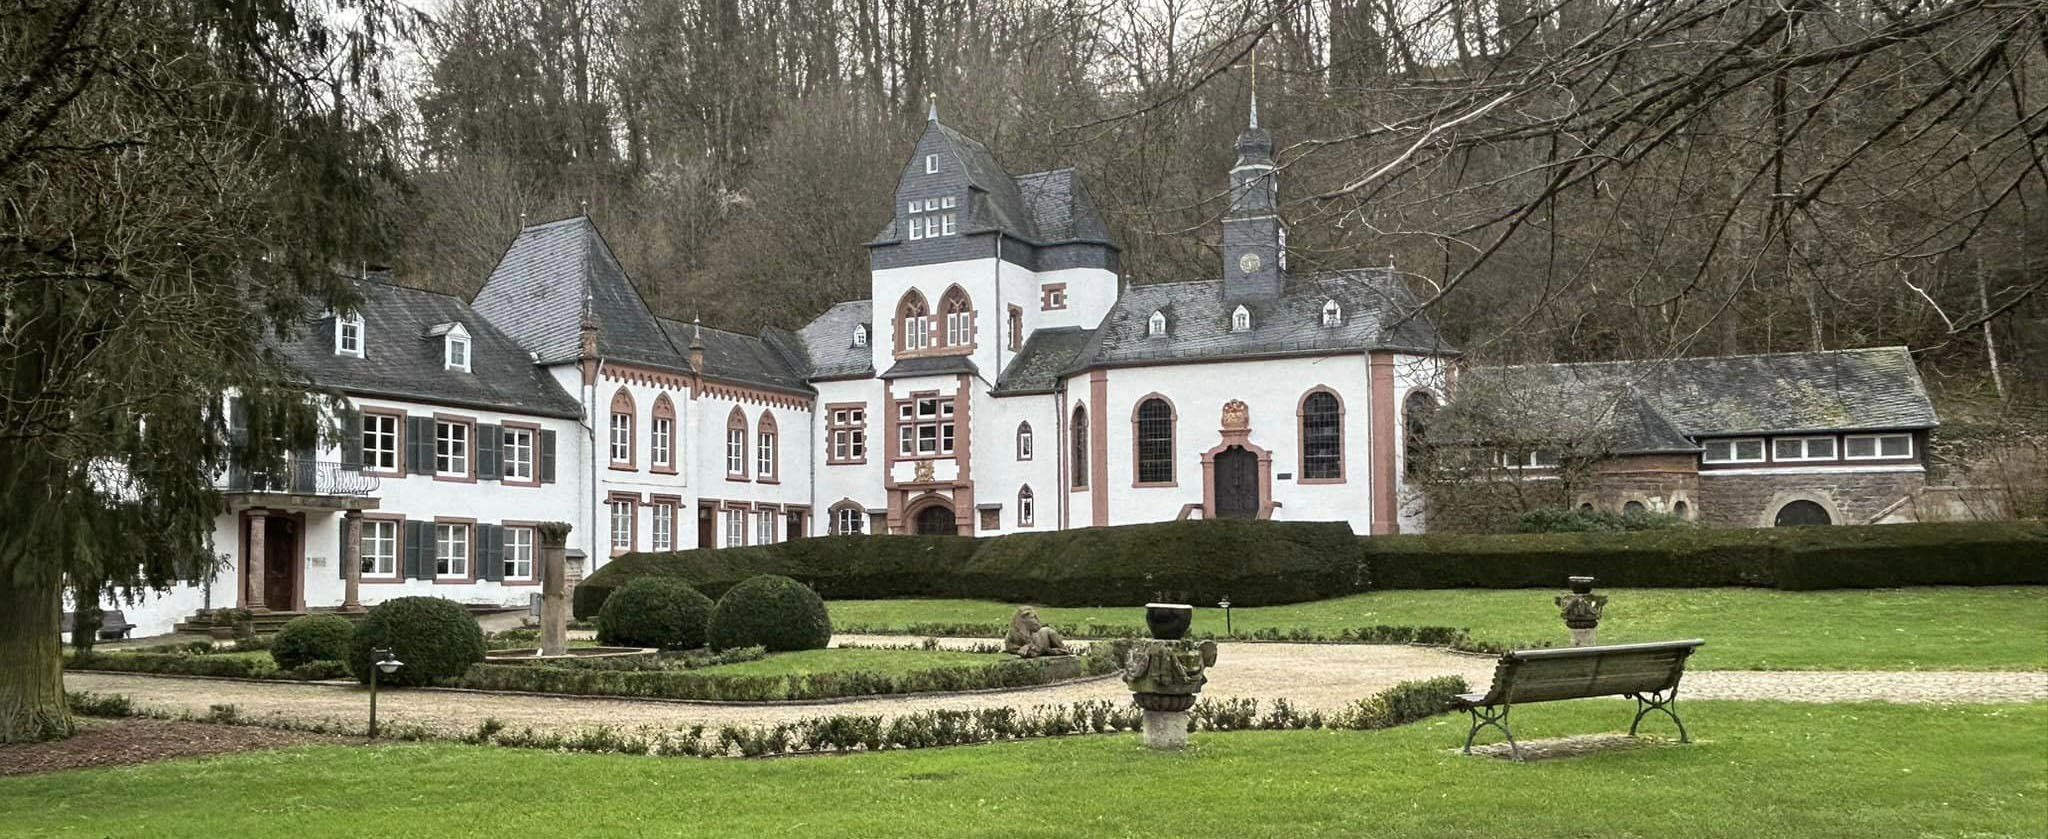 Image of Schloss Dagstuhl